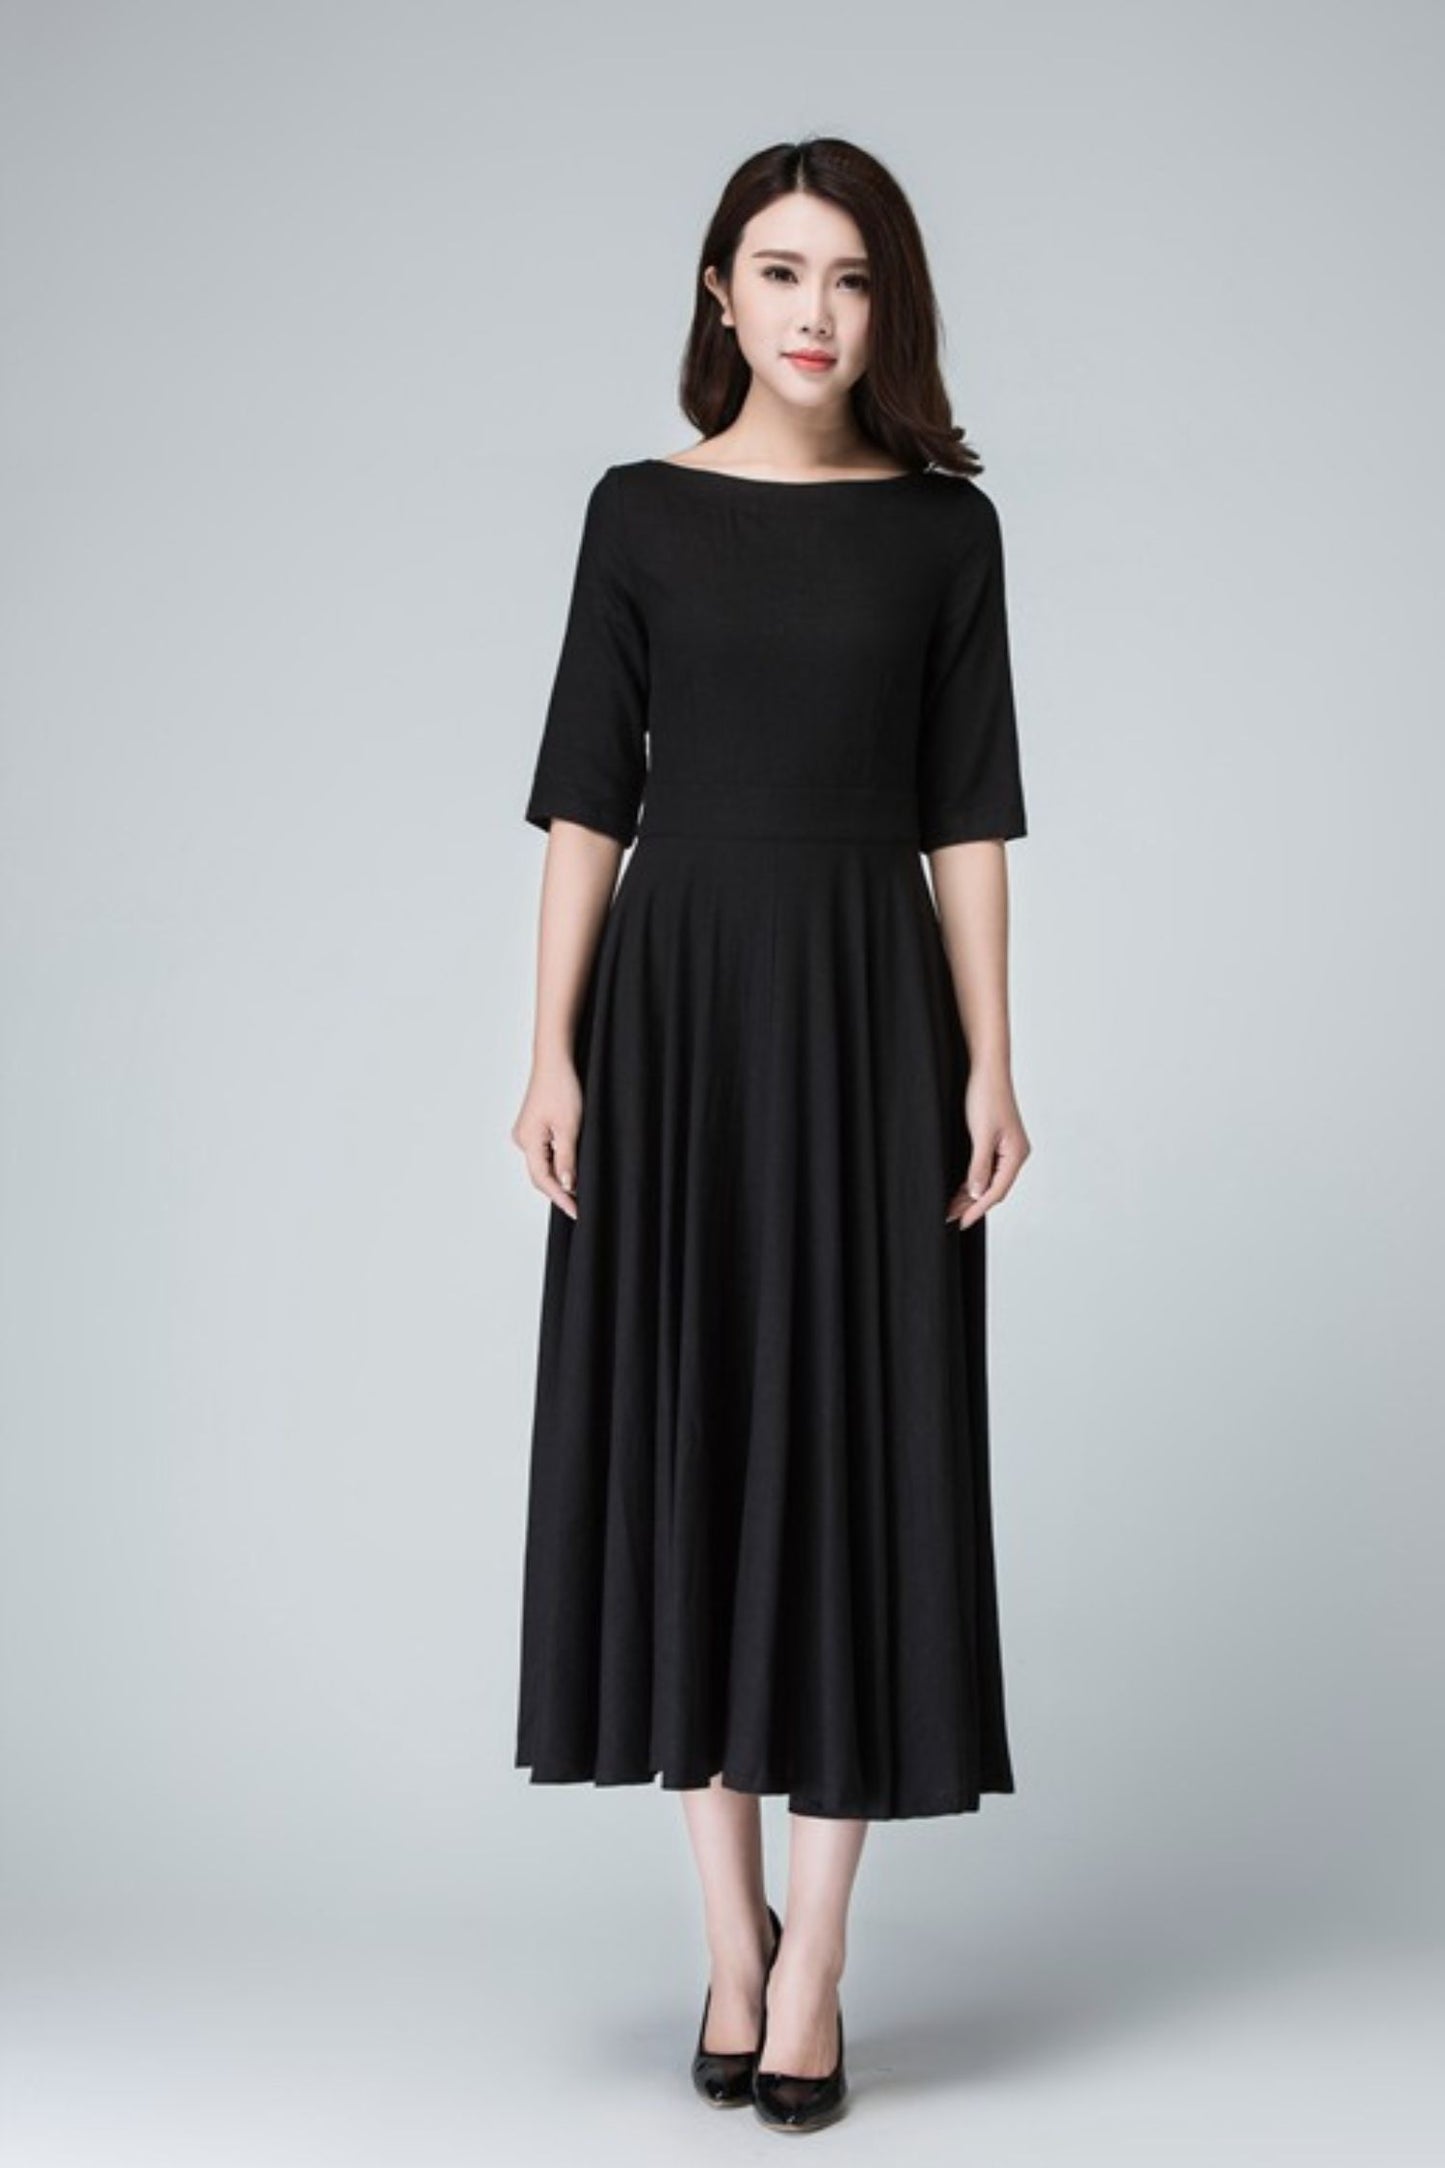 Elegant fit and flare little black dress 1458